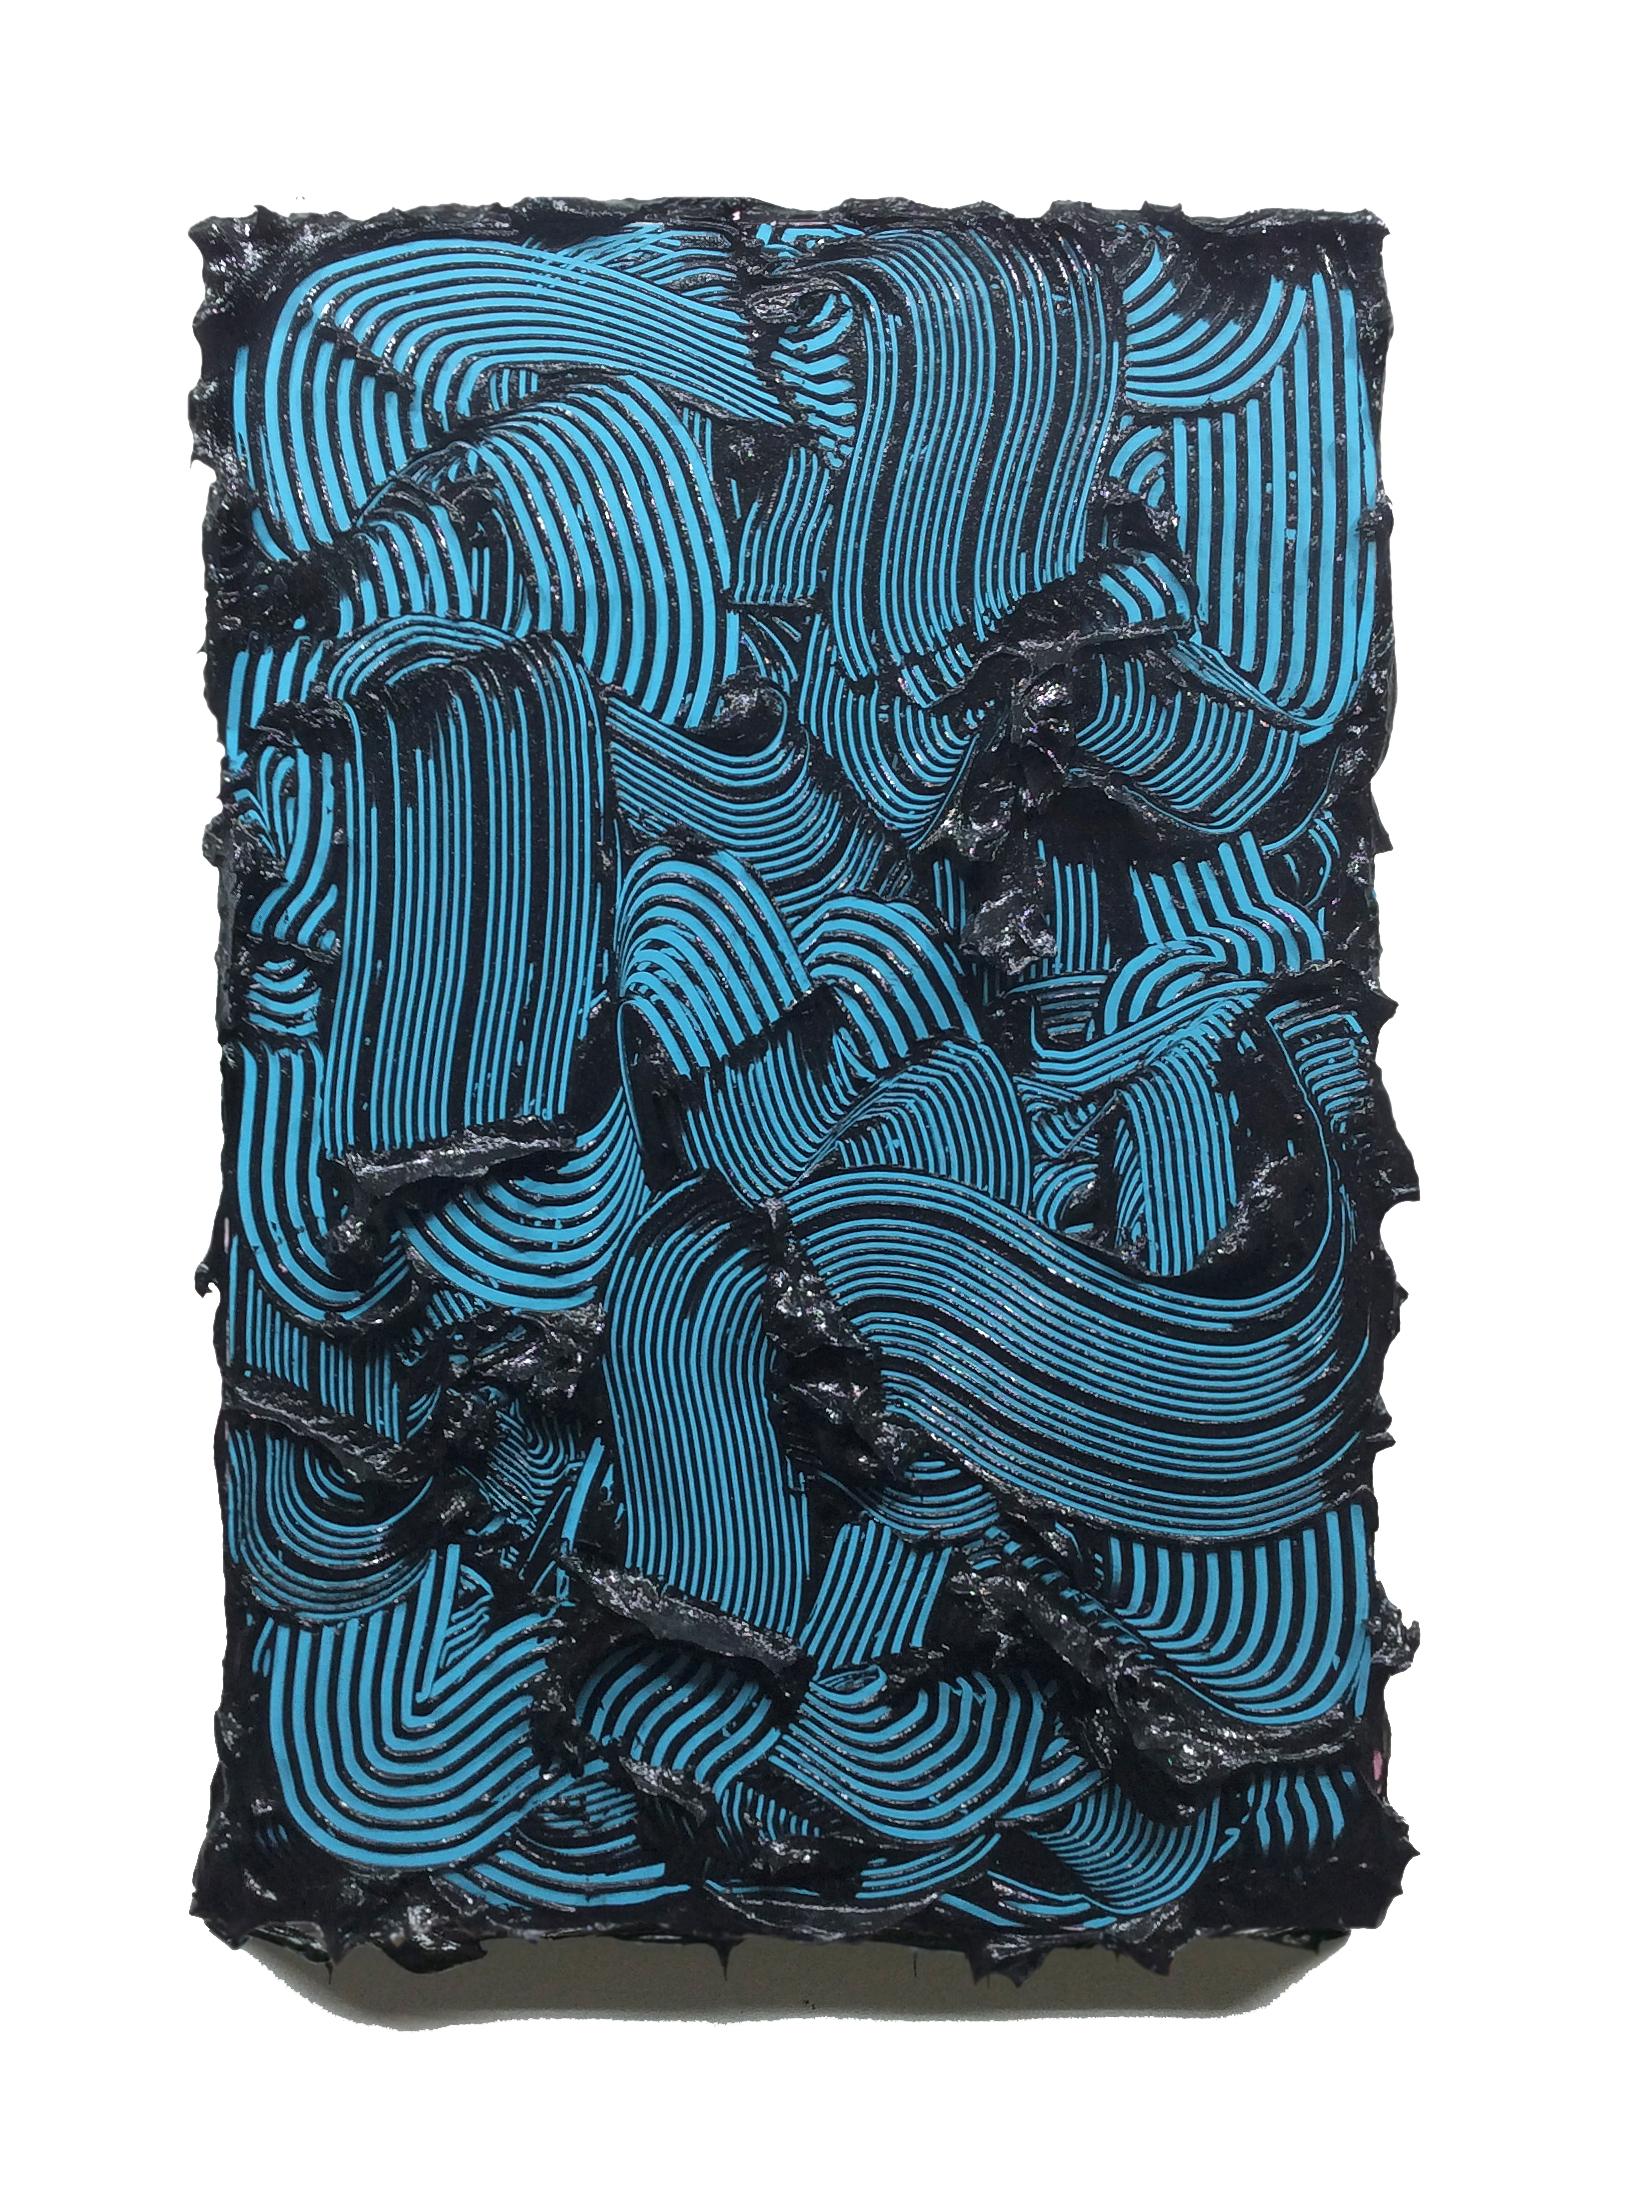 Poseidon - strukturiertes zeitgenössisches Gemälde, farbenfrohe, blaue Striche, abstrakt (Abstrakt), Sculpture, von Tim Nikiforuk